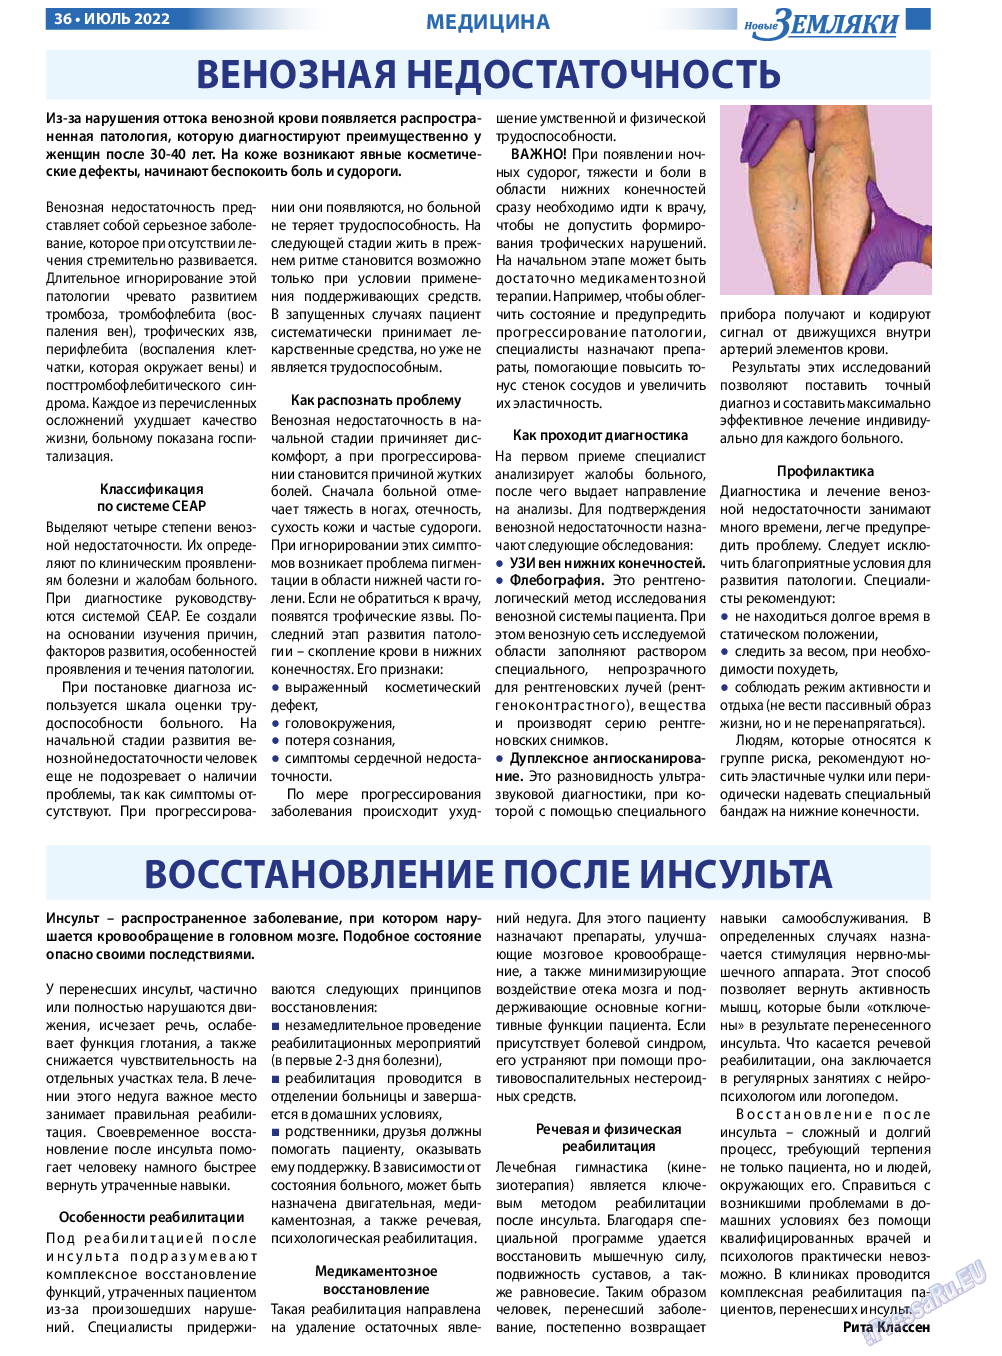 Новые Земляки, газета. 2022 №7 стр.36